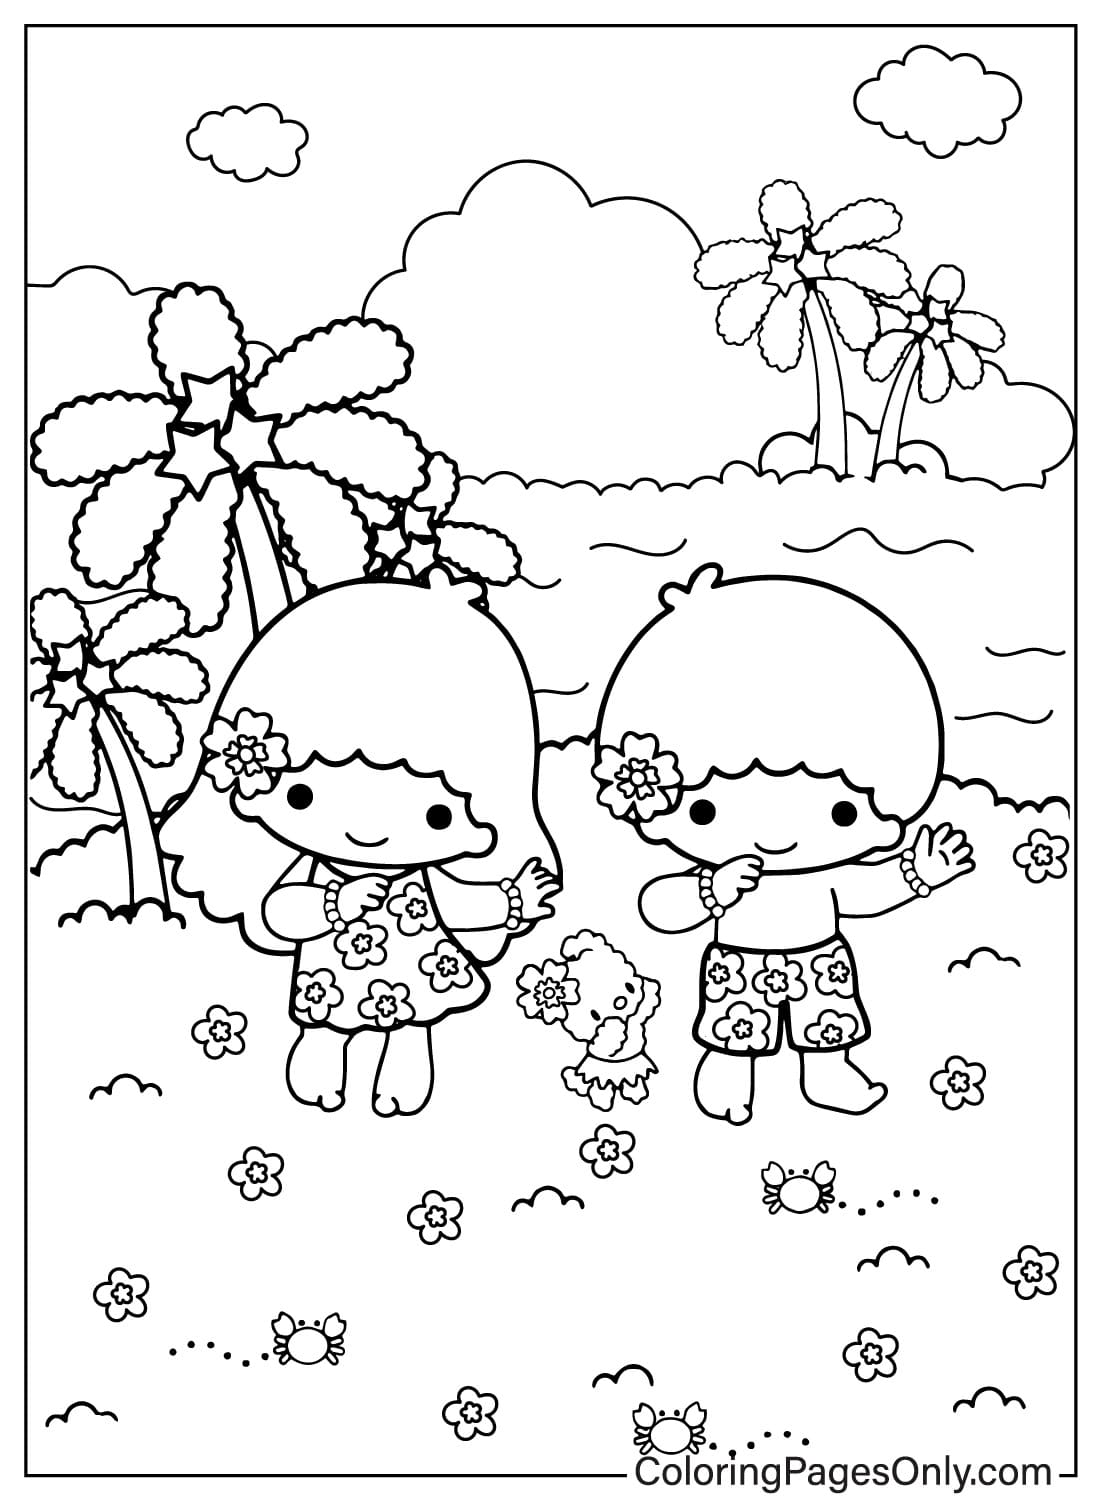 Imagens Página para colorir de Little Twin Stars de Little Twin Stars